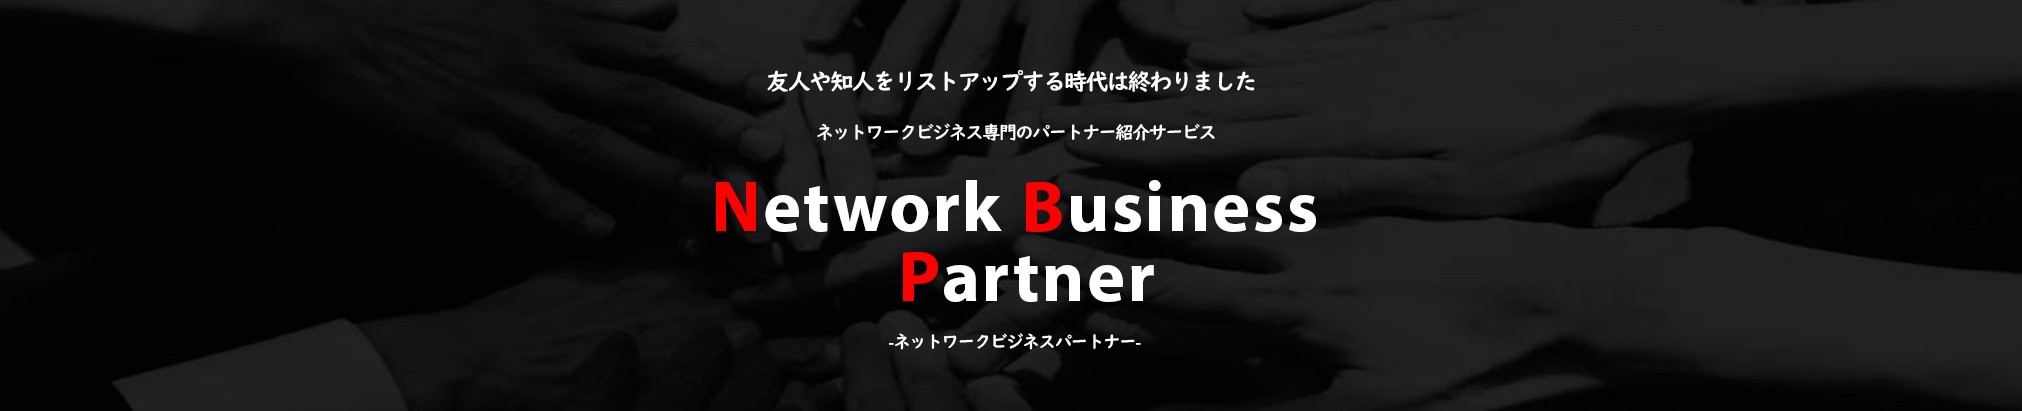 ネットワークビジネスパートナー